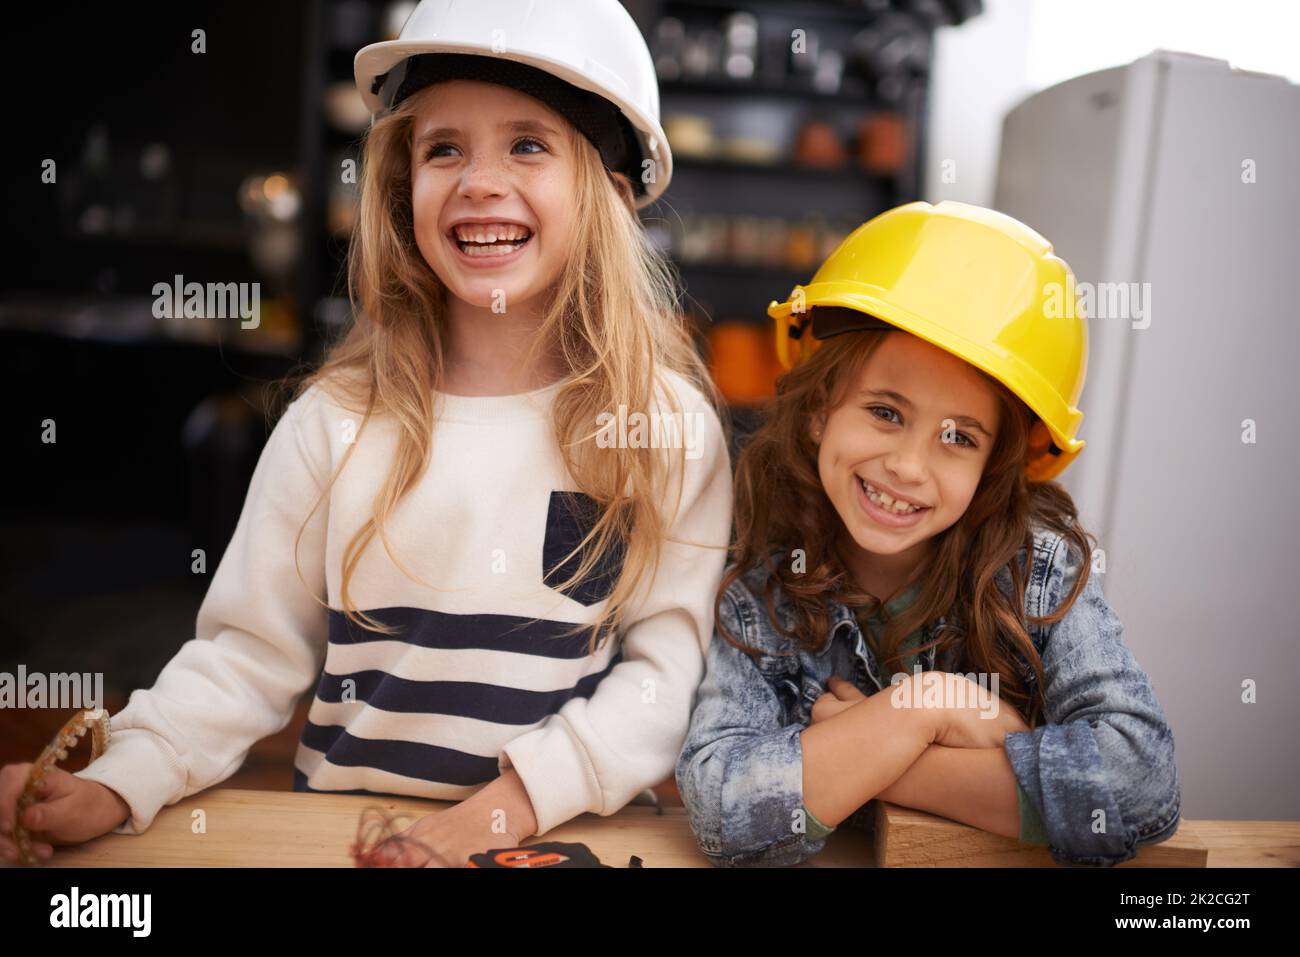 Créer des choses est tellement amusant. Photo de deux petites filles jouant autour avec des outils dans des casques de sécurité. Banque D'Images